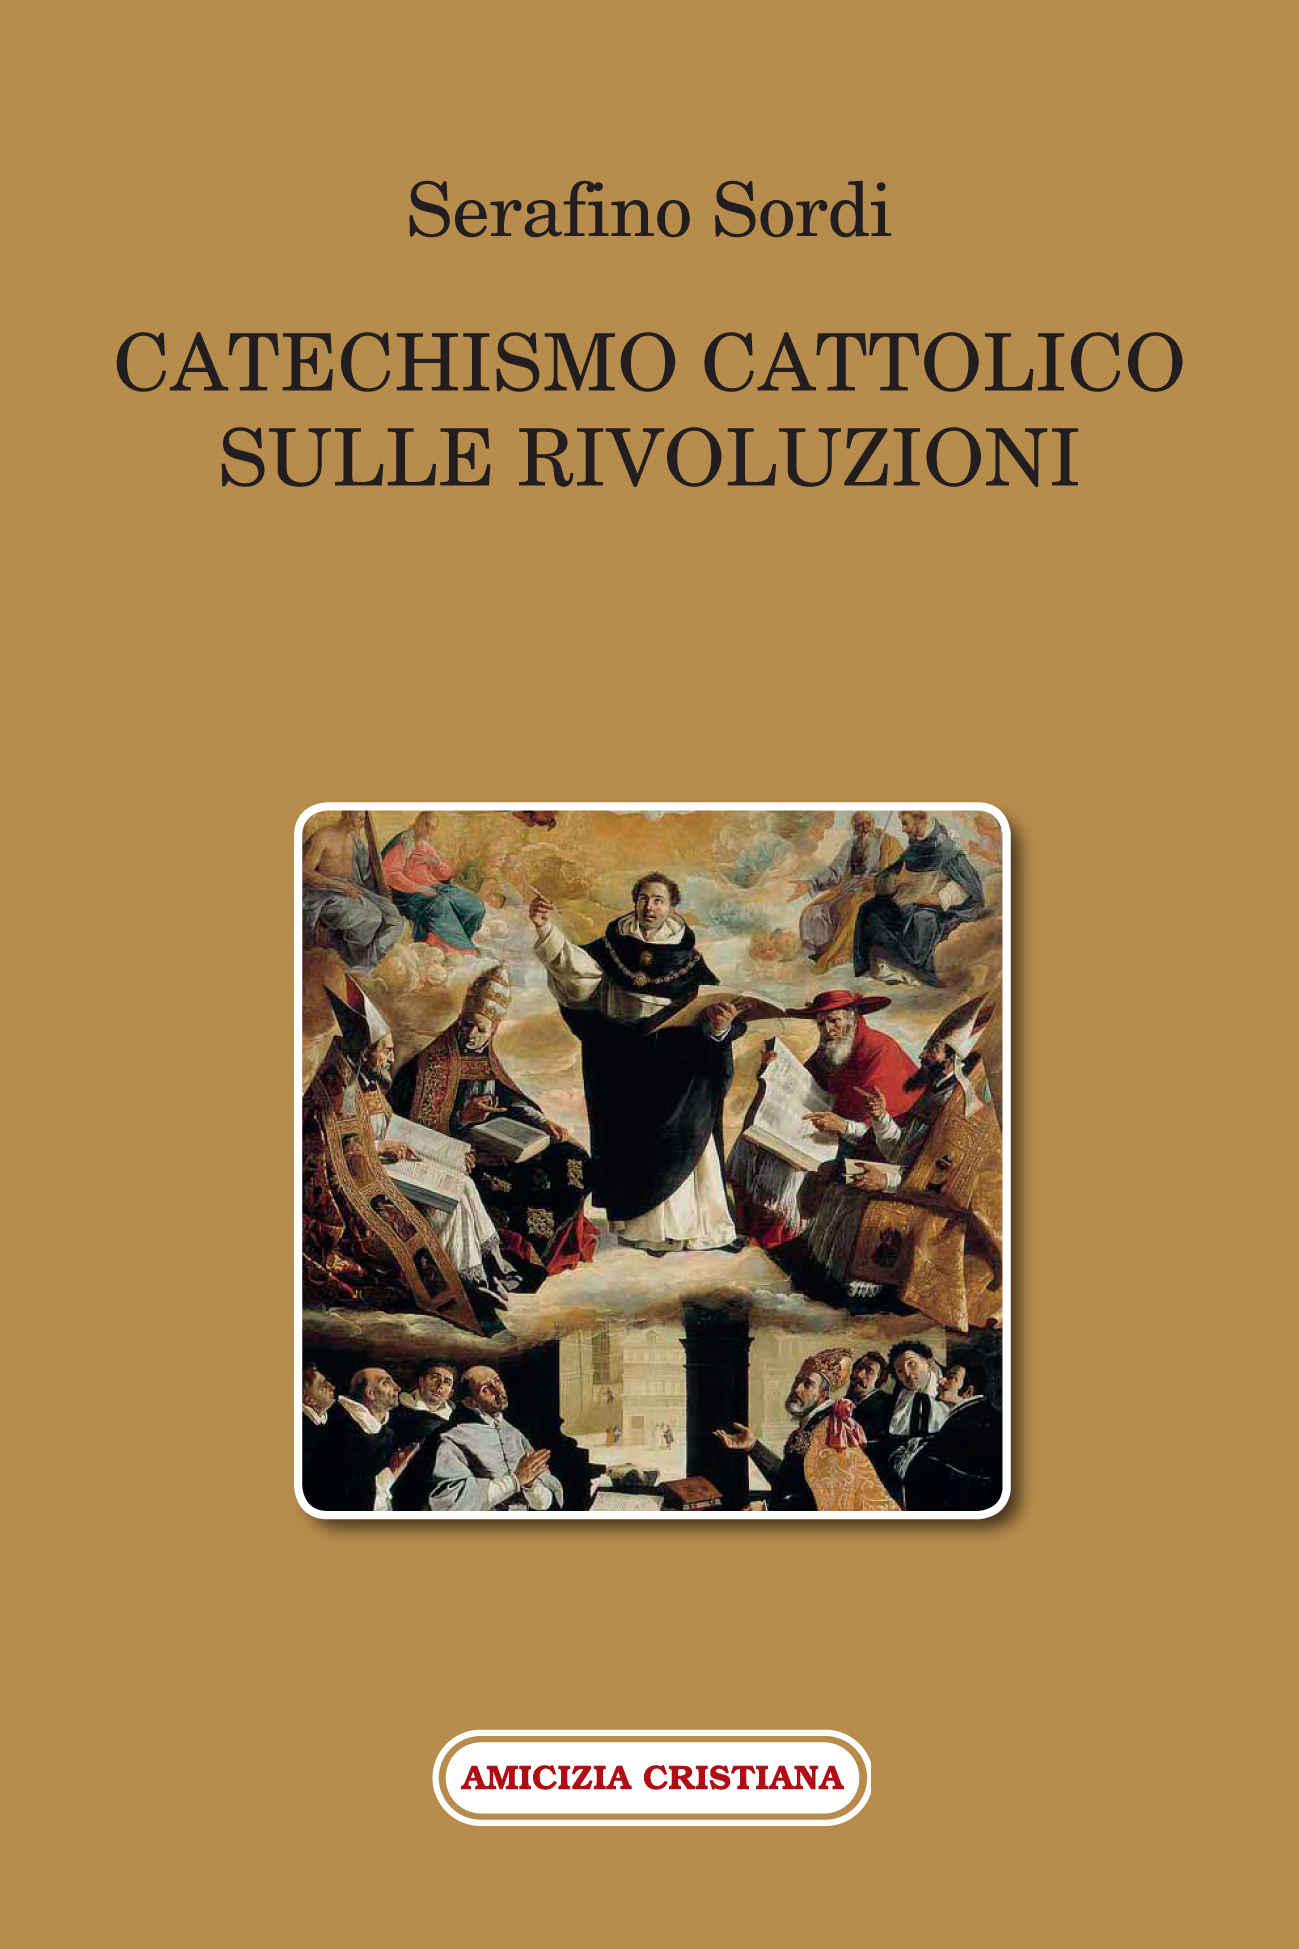 CATECHISMO CATTOLICO SULLE RIVOLUZIONI